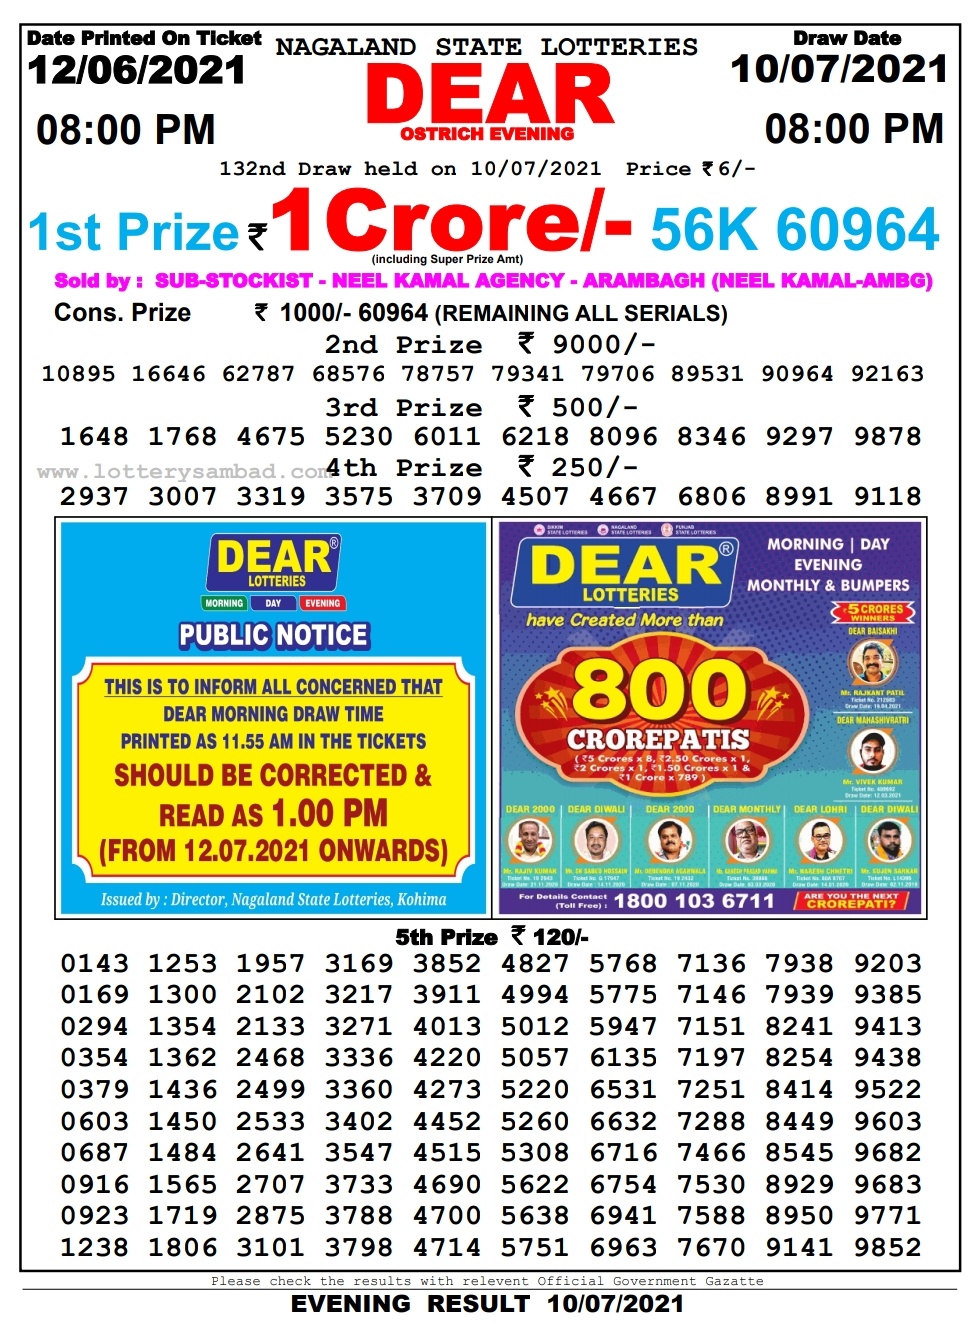 Dear lottery 08.00pm 10-07-2021